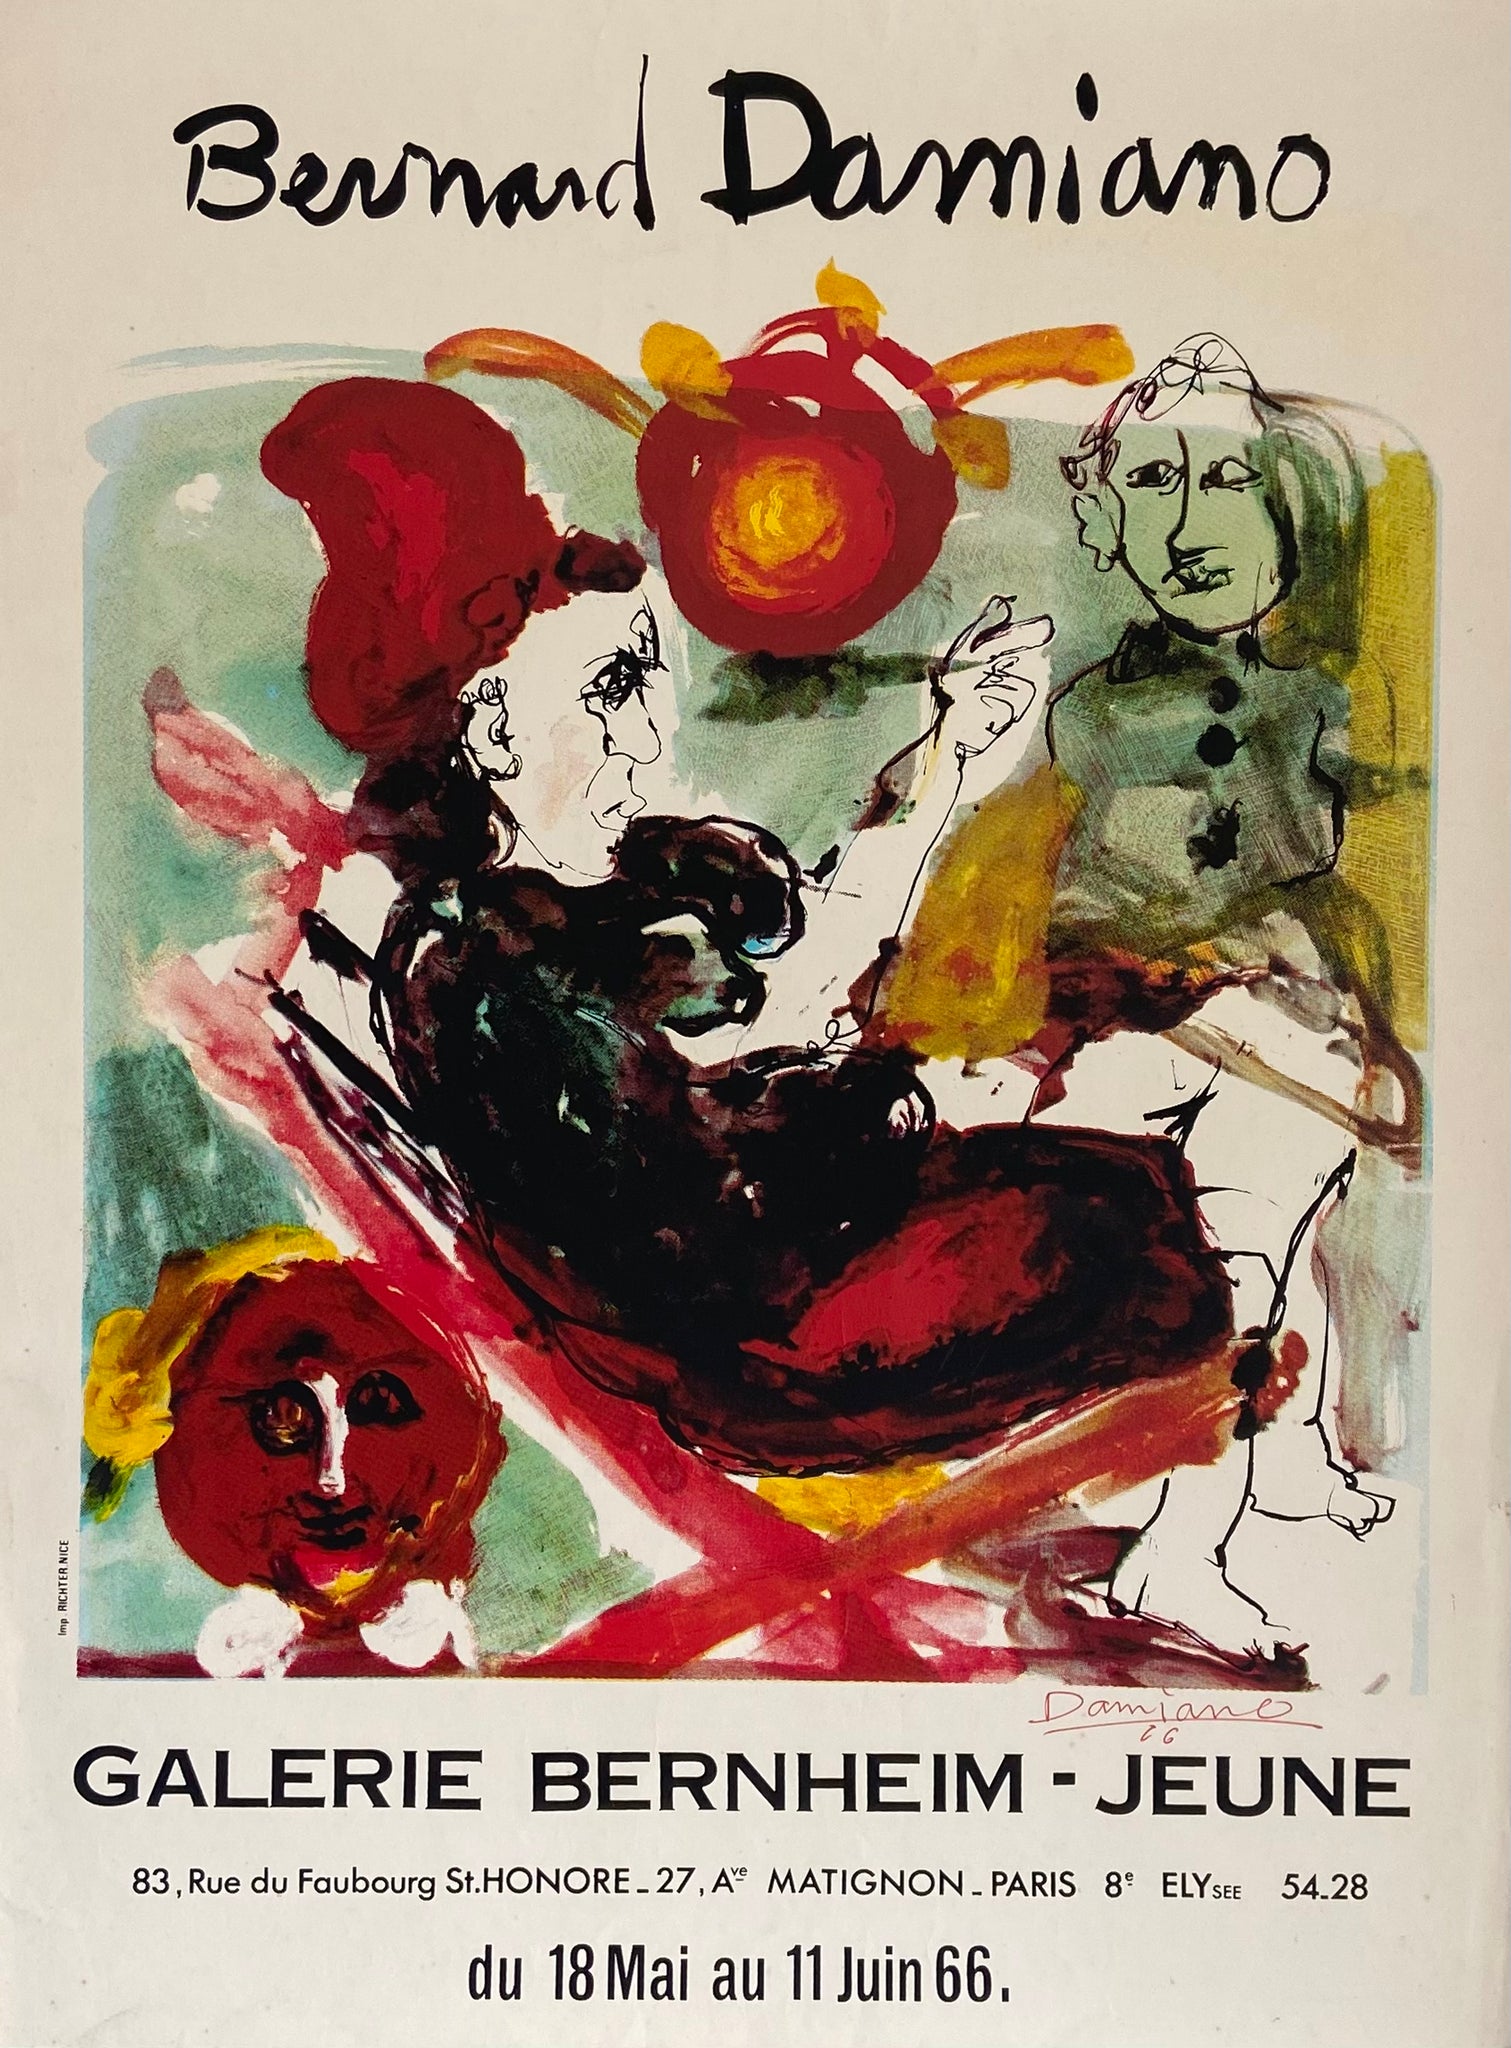 Affiche galerie Bernheim - Jeune    par Bernard Damiano, 1966